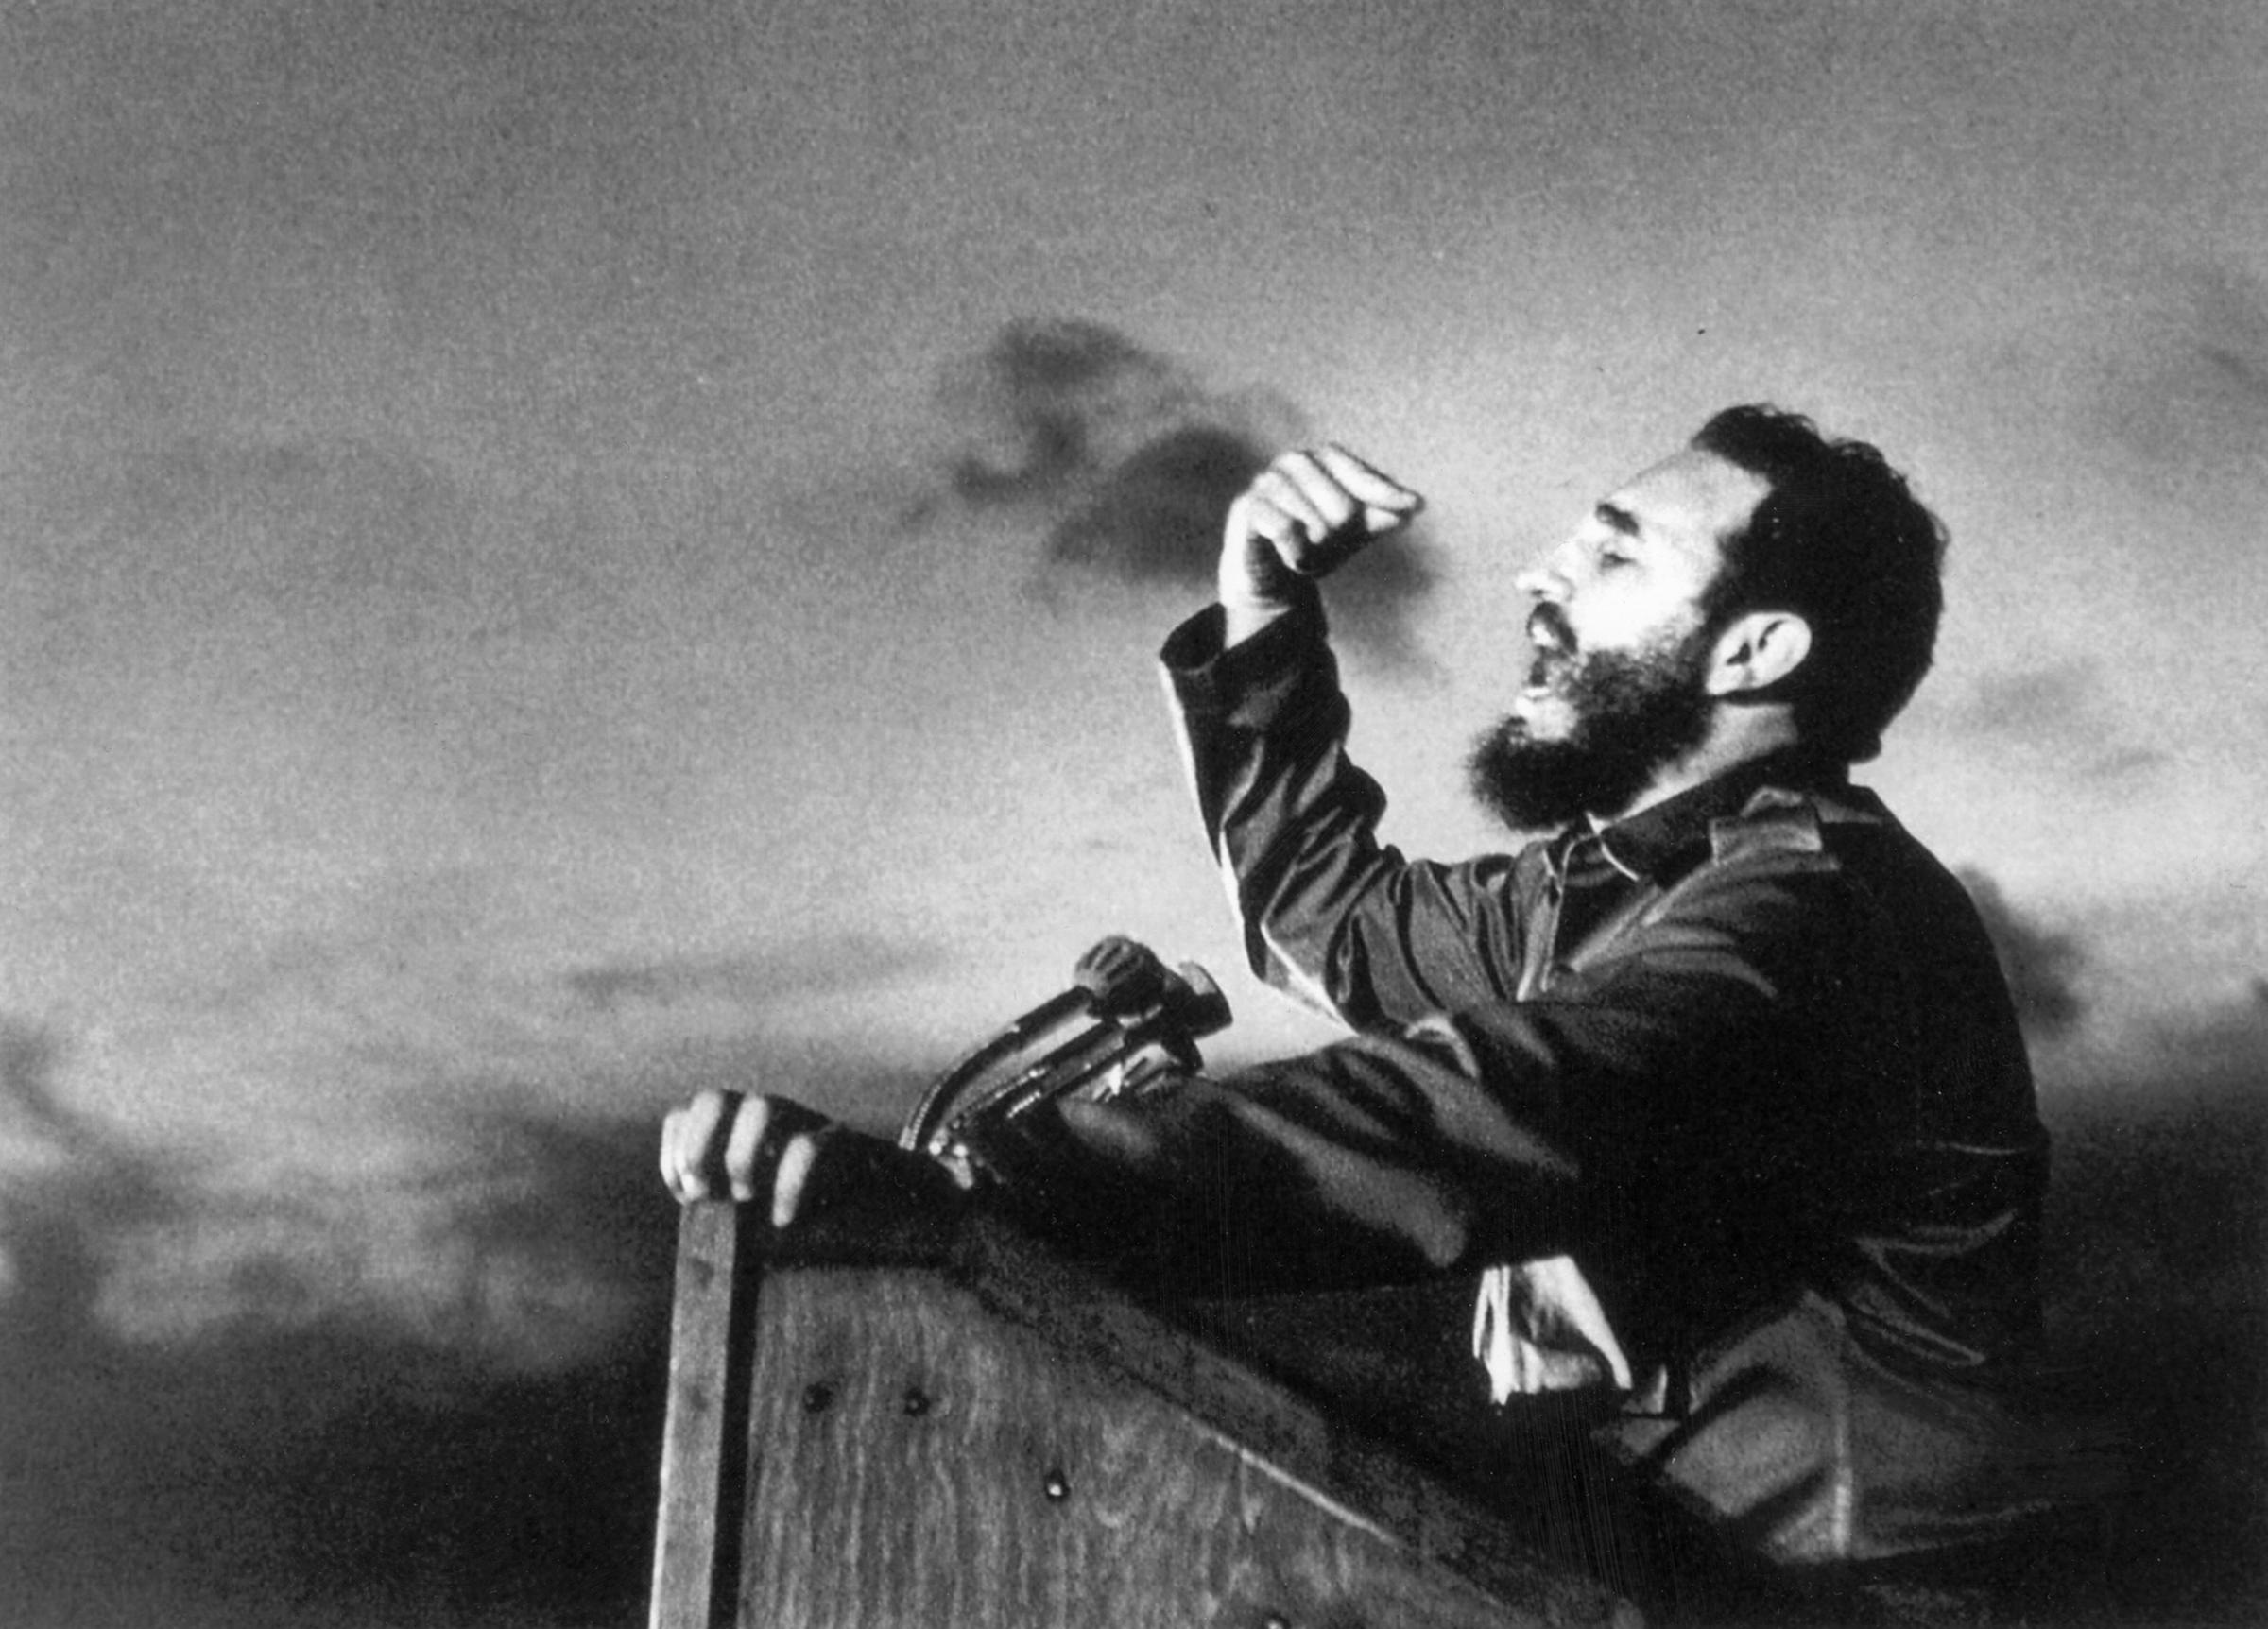 Fidel Castro, a master orator, delivers a speech circa 1960.